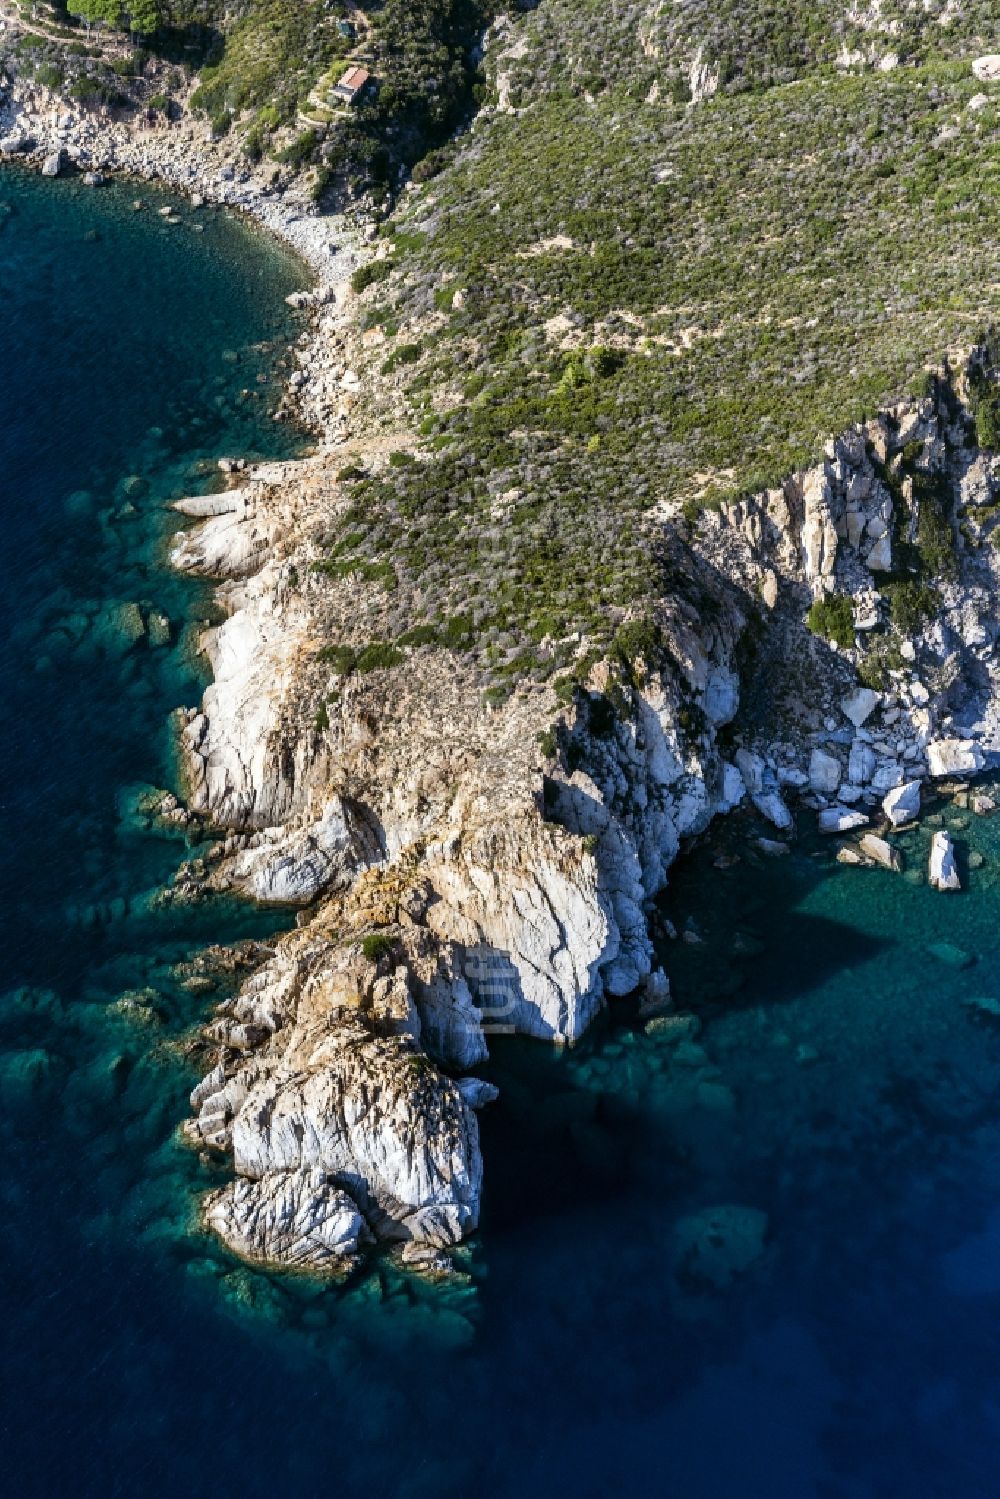 Elba aus der Vogelperspektive: Küste und Meer der Insel Elba in der Toscana in Italien